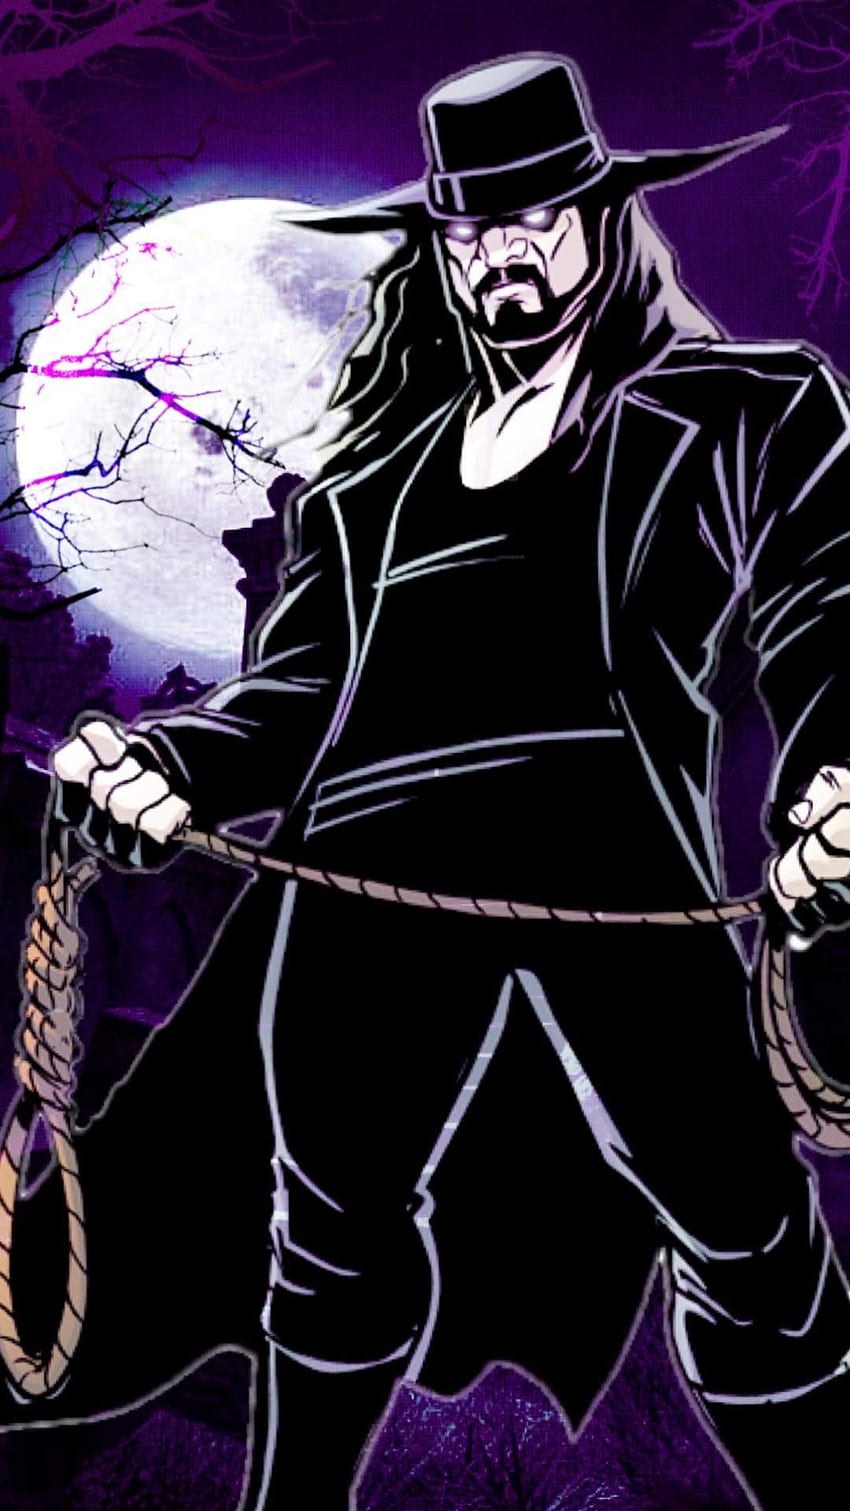 The Undertaker Demon Face HD WWE Wallpaper